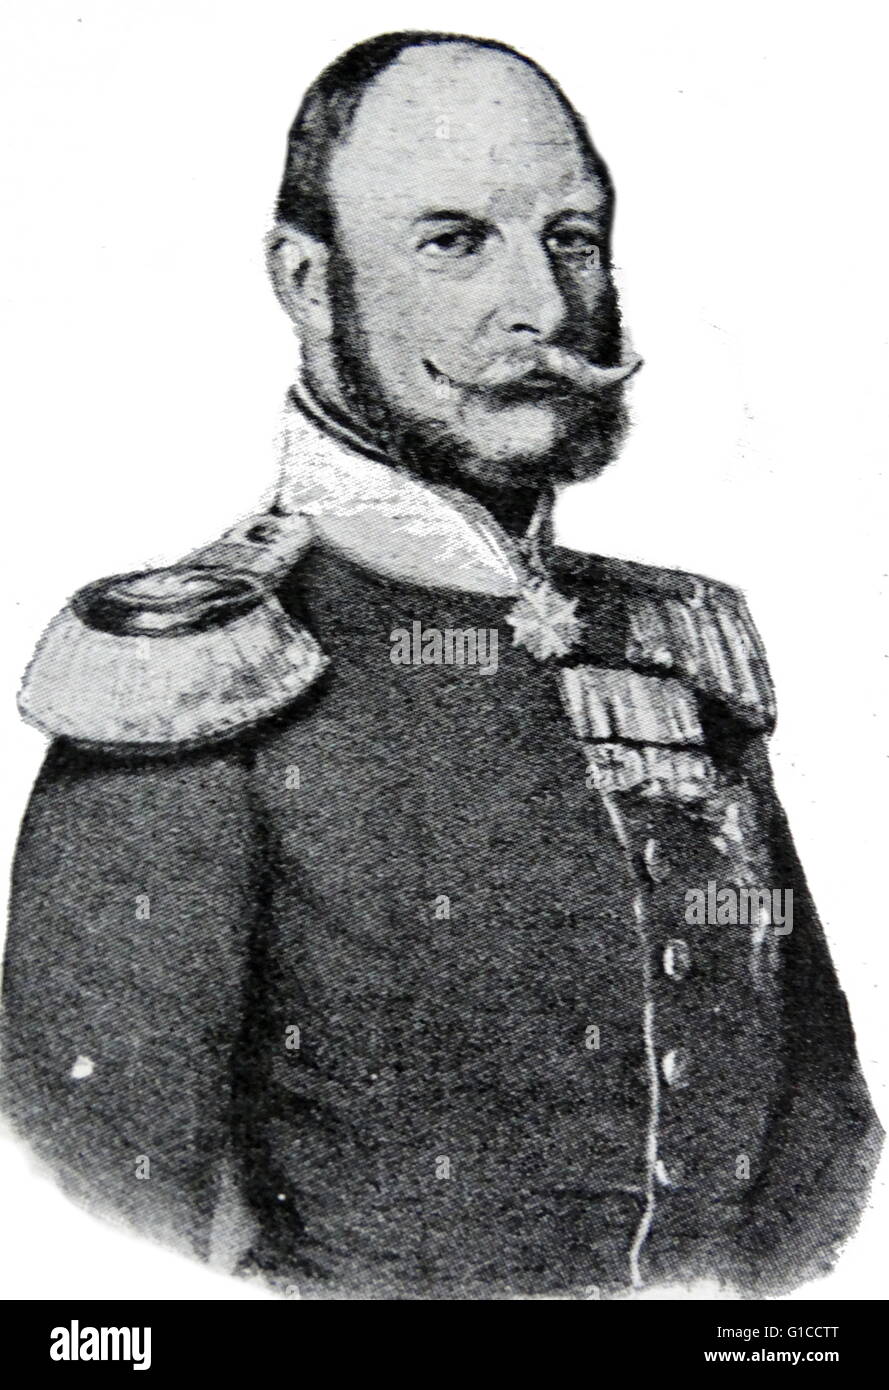 Portrait de William I, l'empereur allemand (1797-1888) de la maison de Hohenzollern a été le roi de Prusse et le premier empereur allemand. En date du 19e siècle Banque D'Images